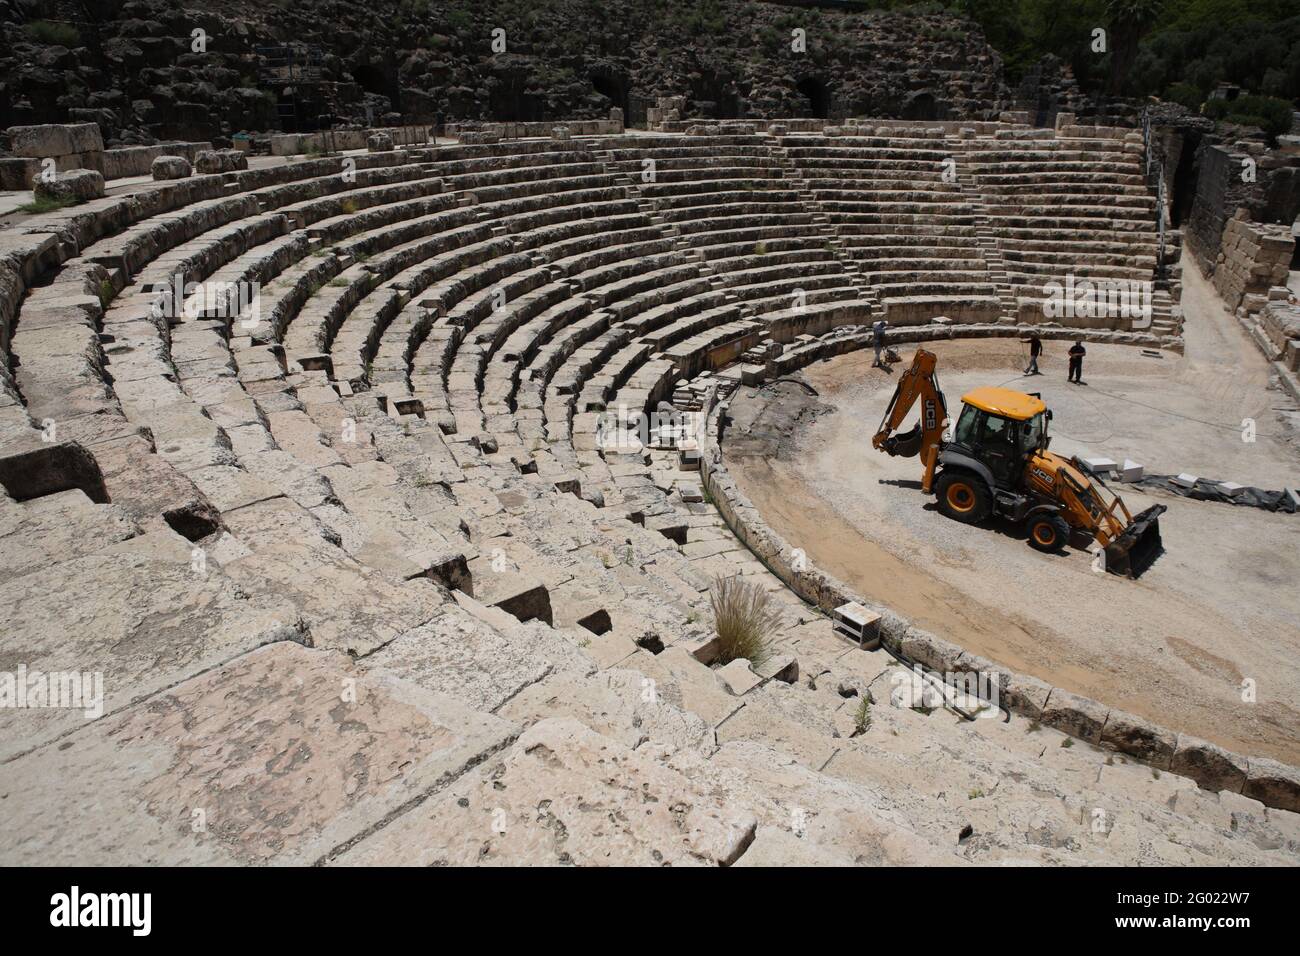 Teatro da 7000 posti a Beit She'an, Bet She'an o Scythopolis, nella Valle del Giordano, costruito nel i secolo d.C. in epoca romana, distrutto in un terremoto del 749. Foto Stock